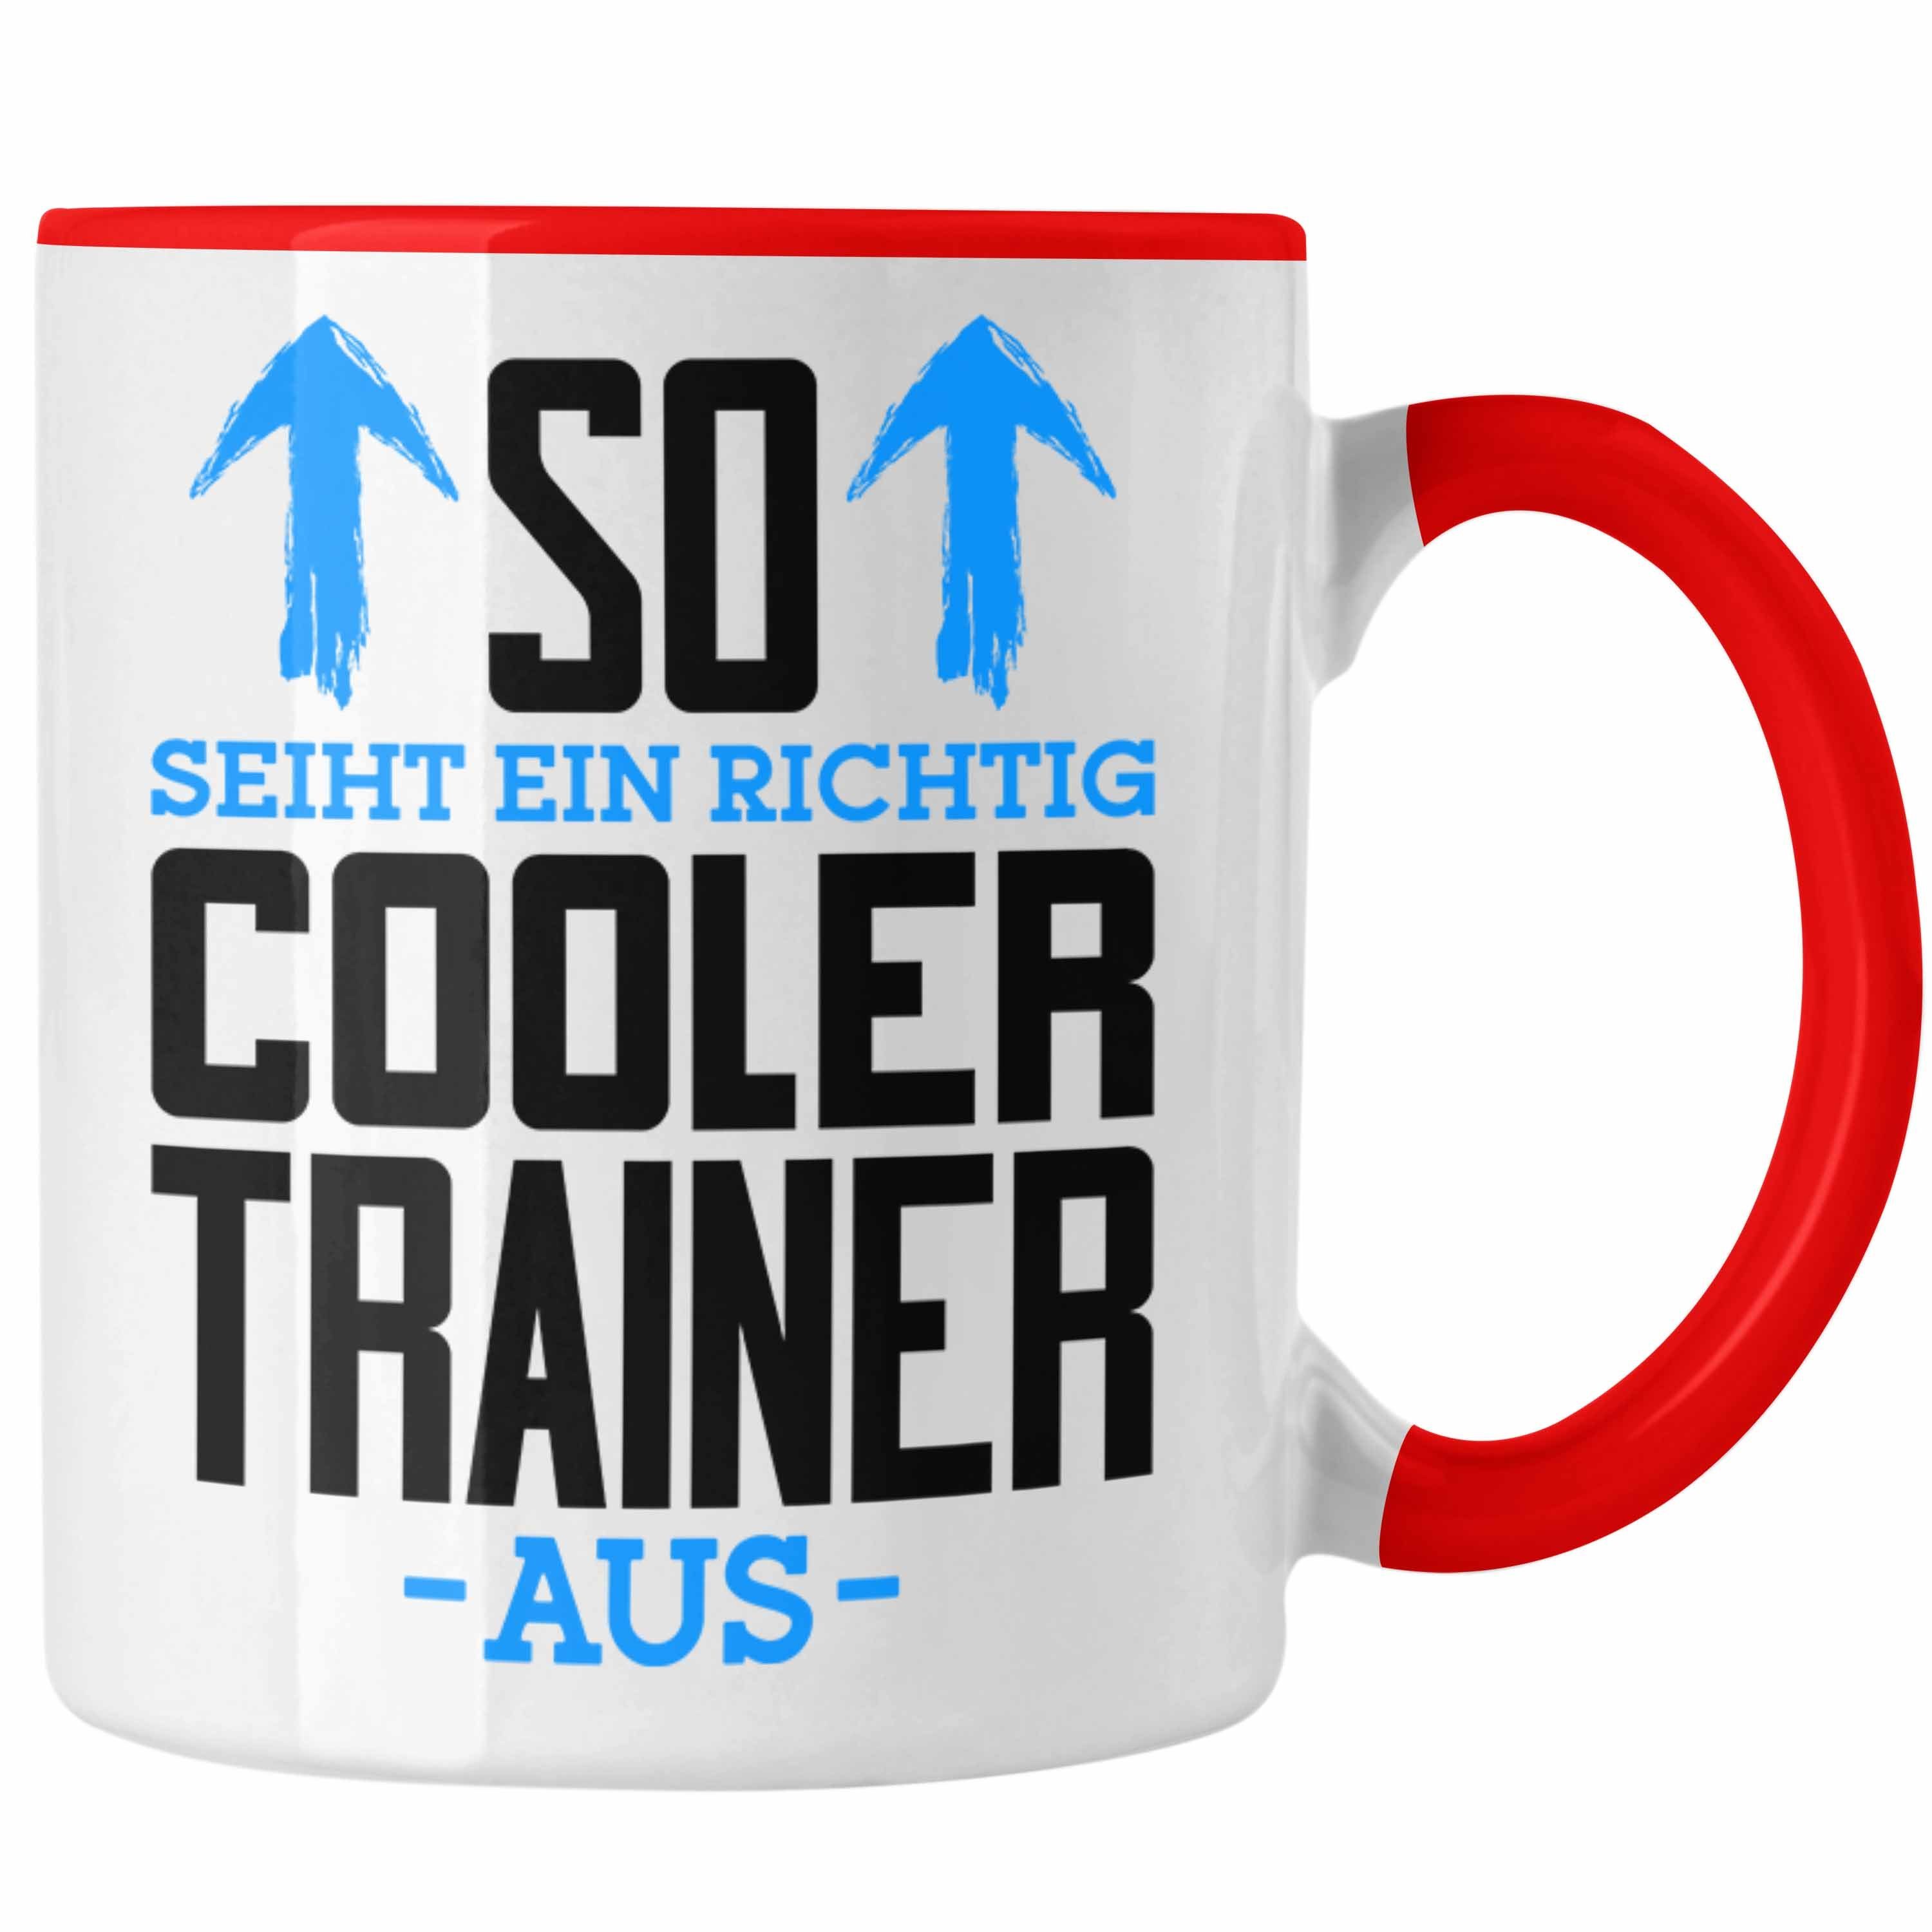 Trendation Tasse Trendation Aus - Der So Ein Cooler Rot Geschenk Bester Richtig Trainer Tasse Trainer Welt Sieht